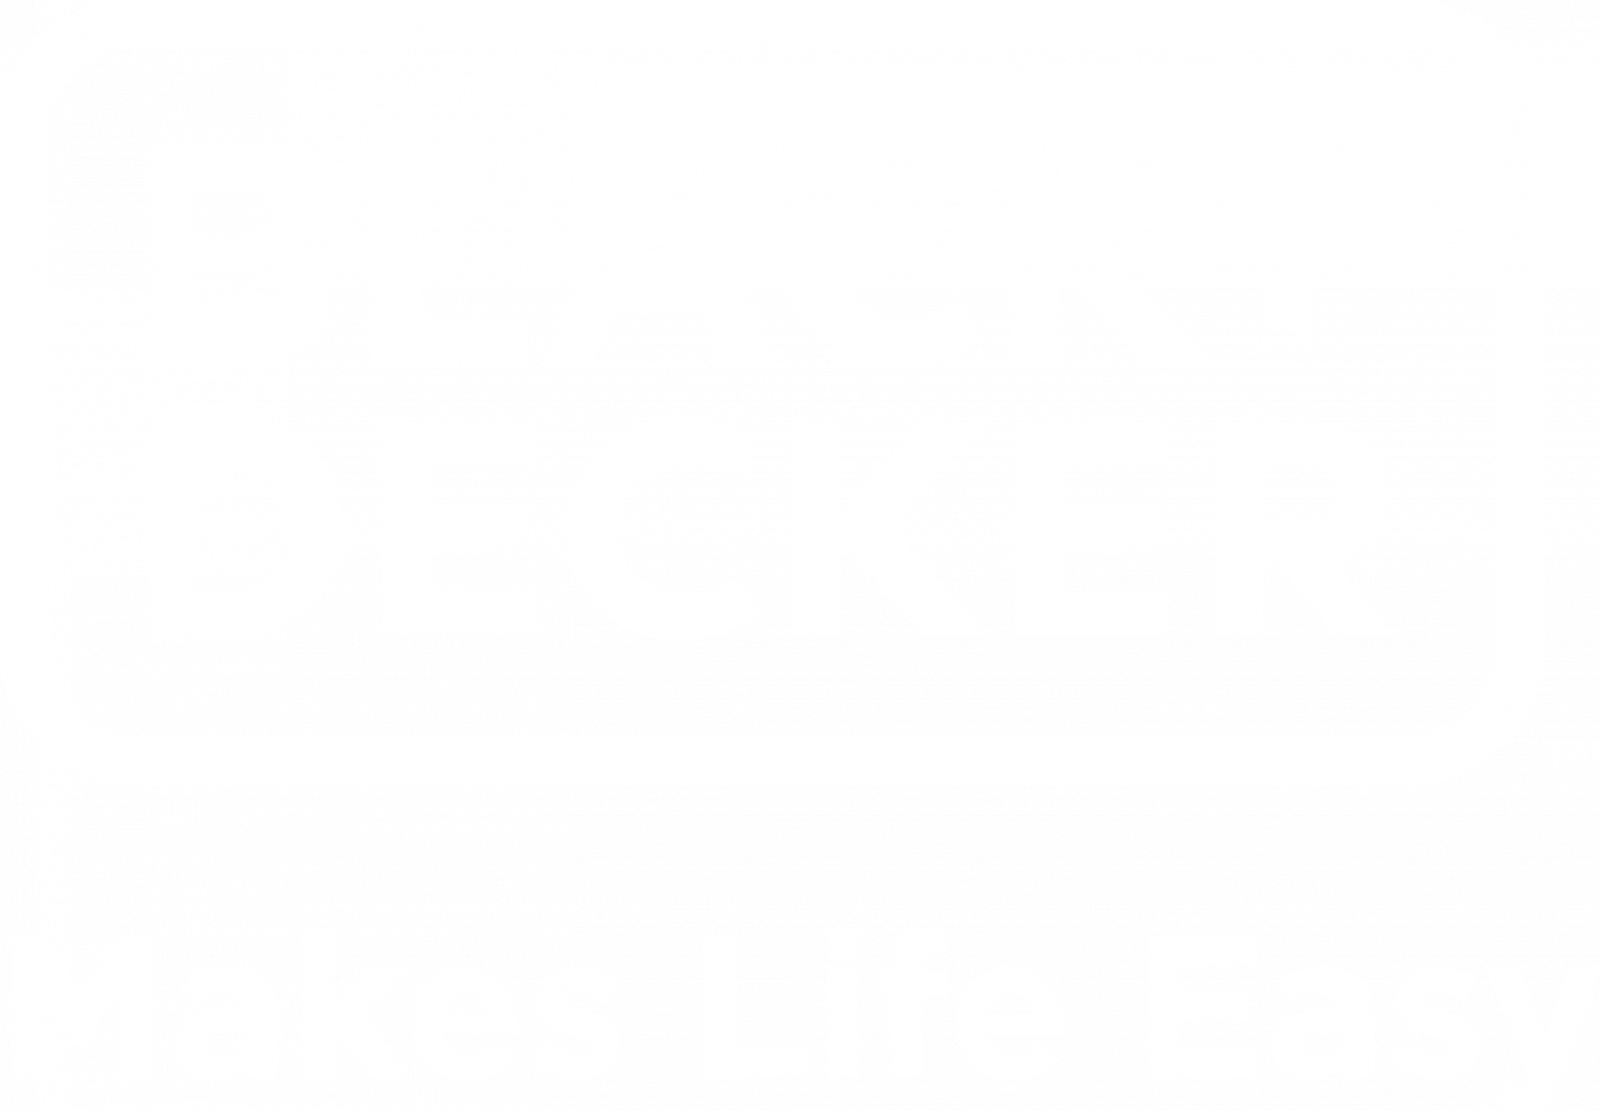 Black and Decker HST1200-B5 220-240 Volt 50 Hz Handy Garment Steamer